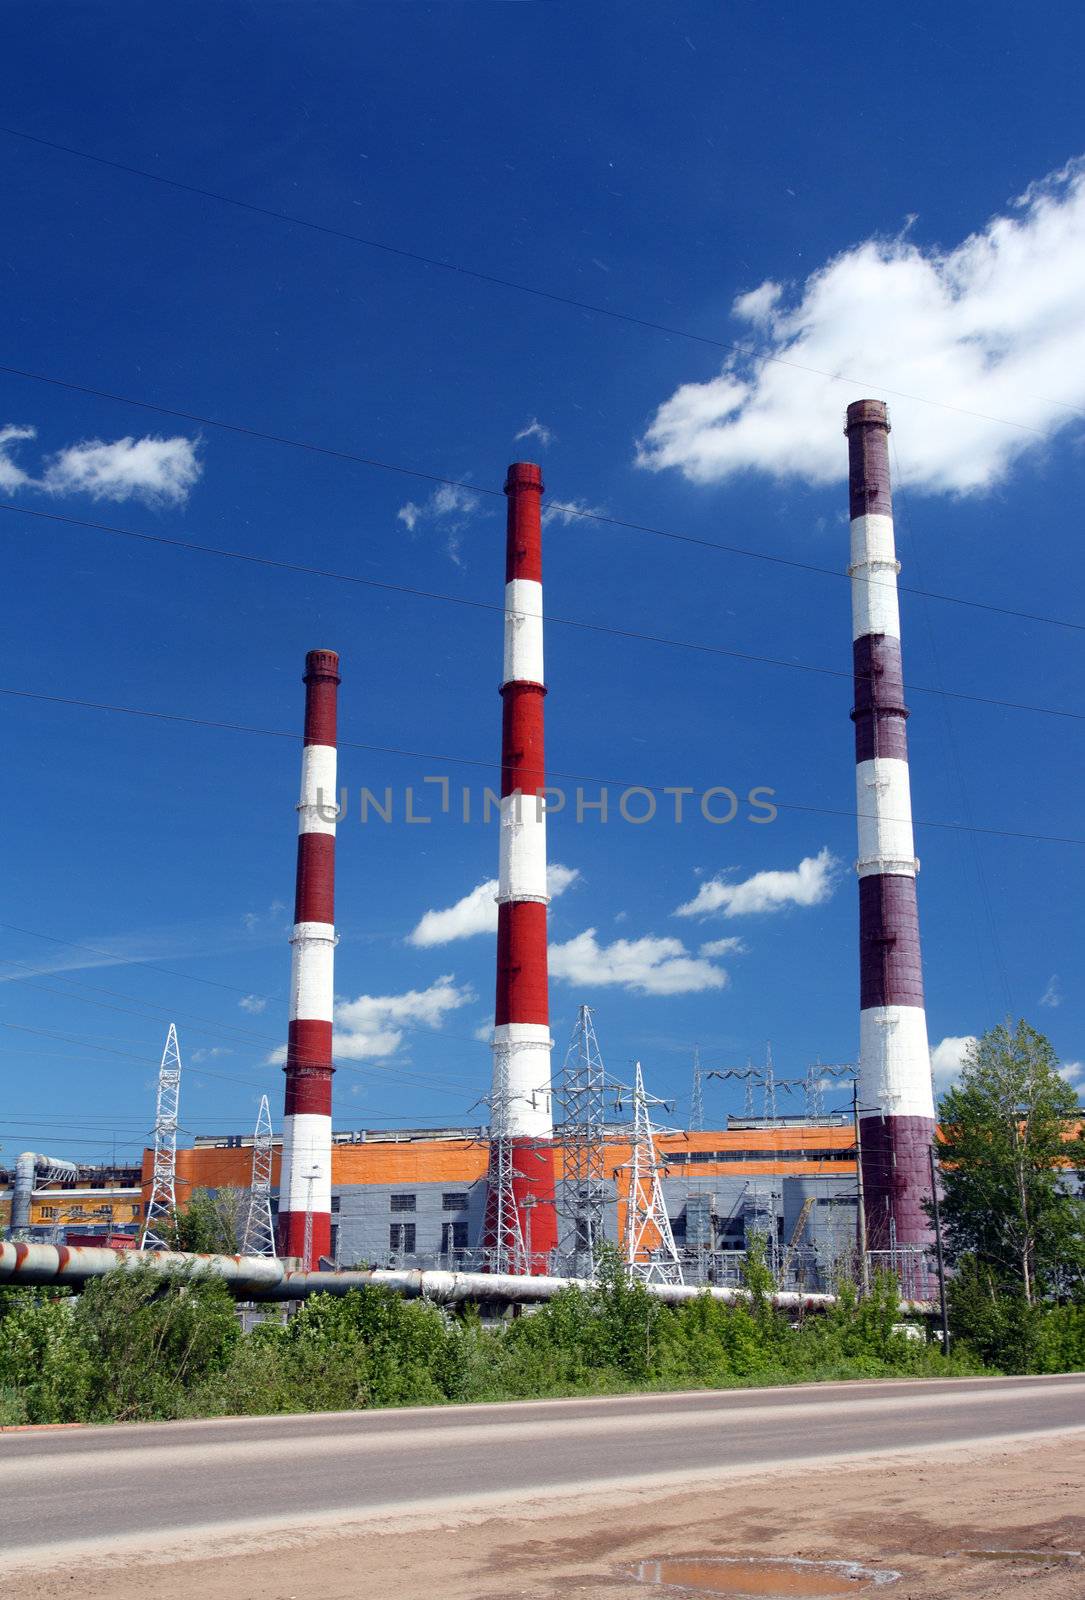 factory chimneys under blue sky